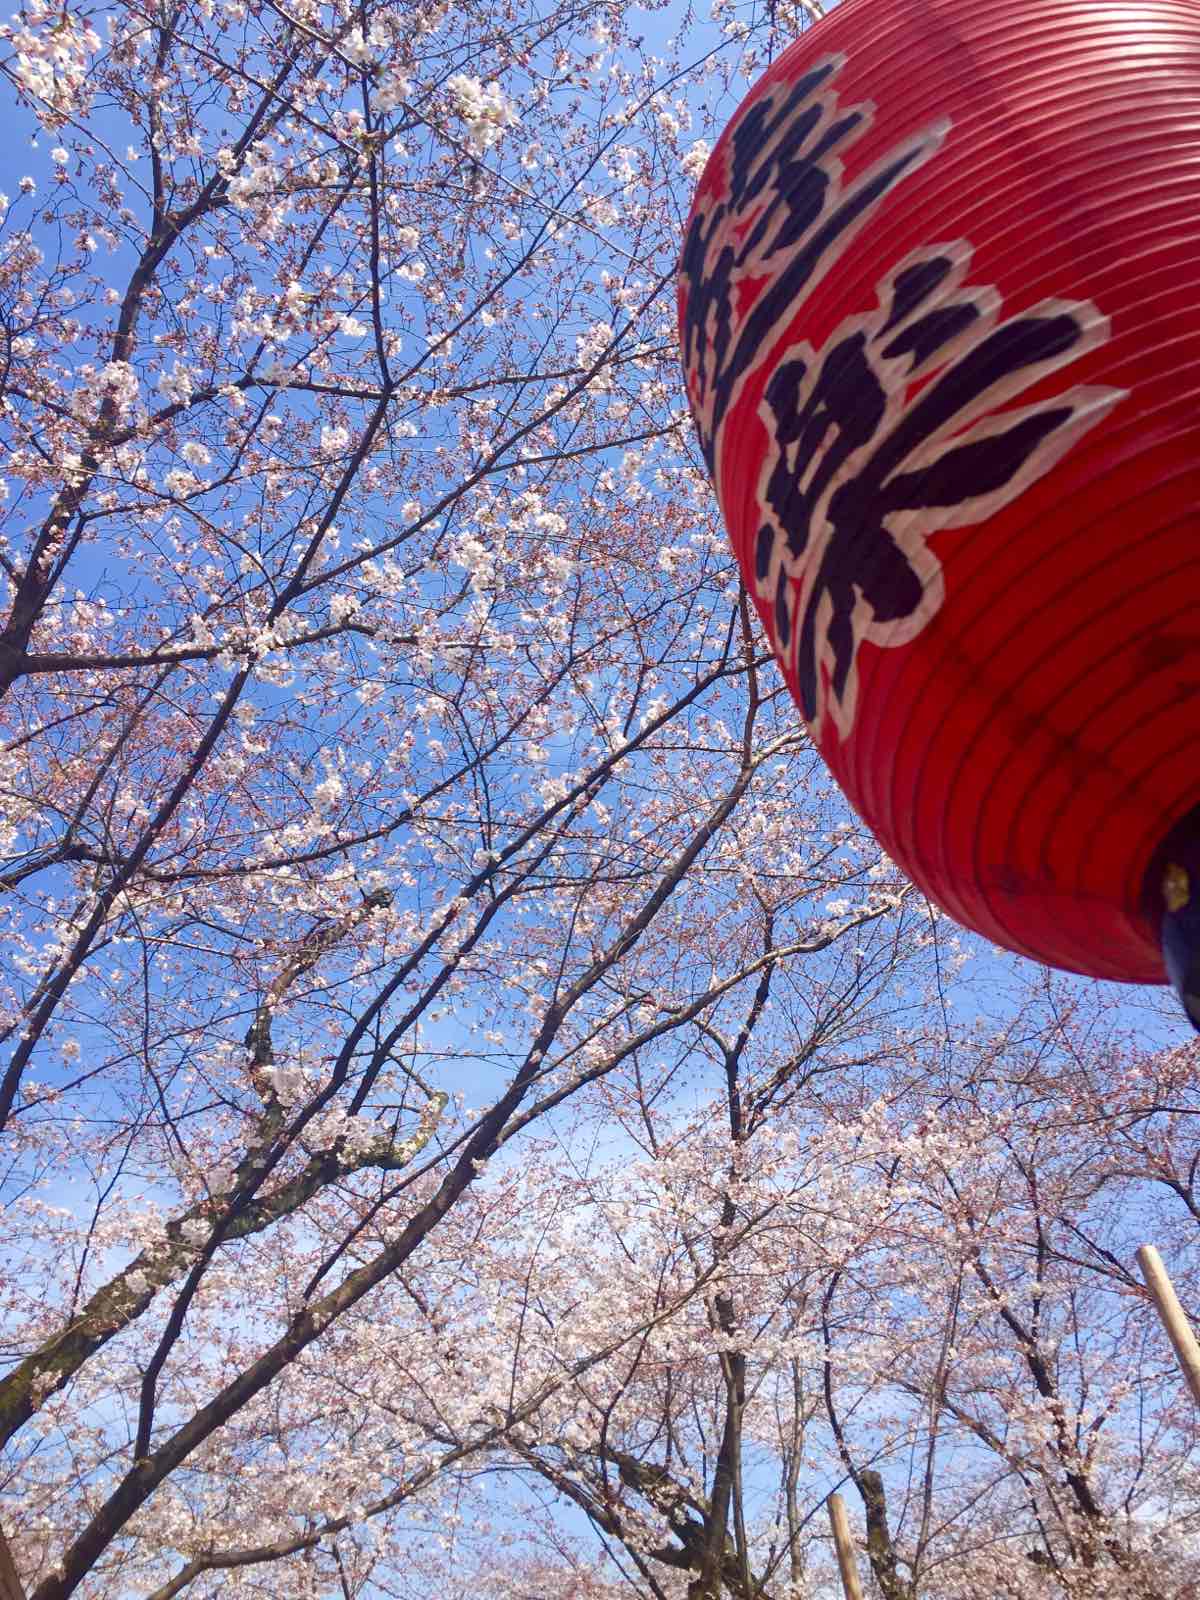 很少有人攻略这个小神社，但在樱花盛开的时候来到京都，平野神社是绝对不可